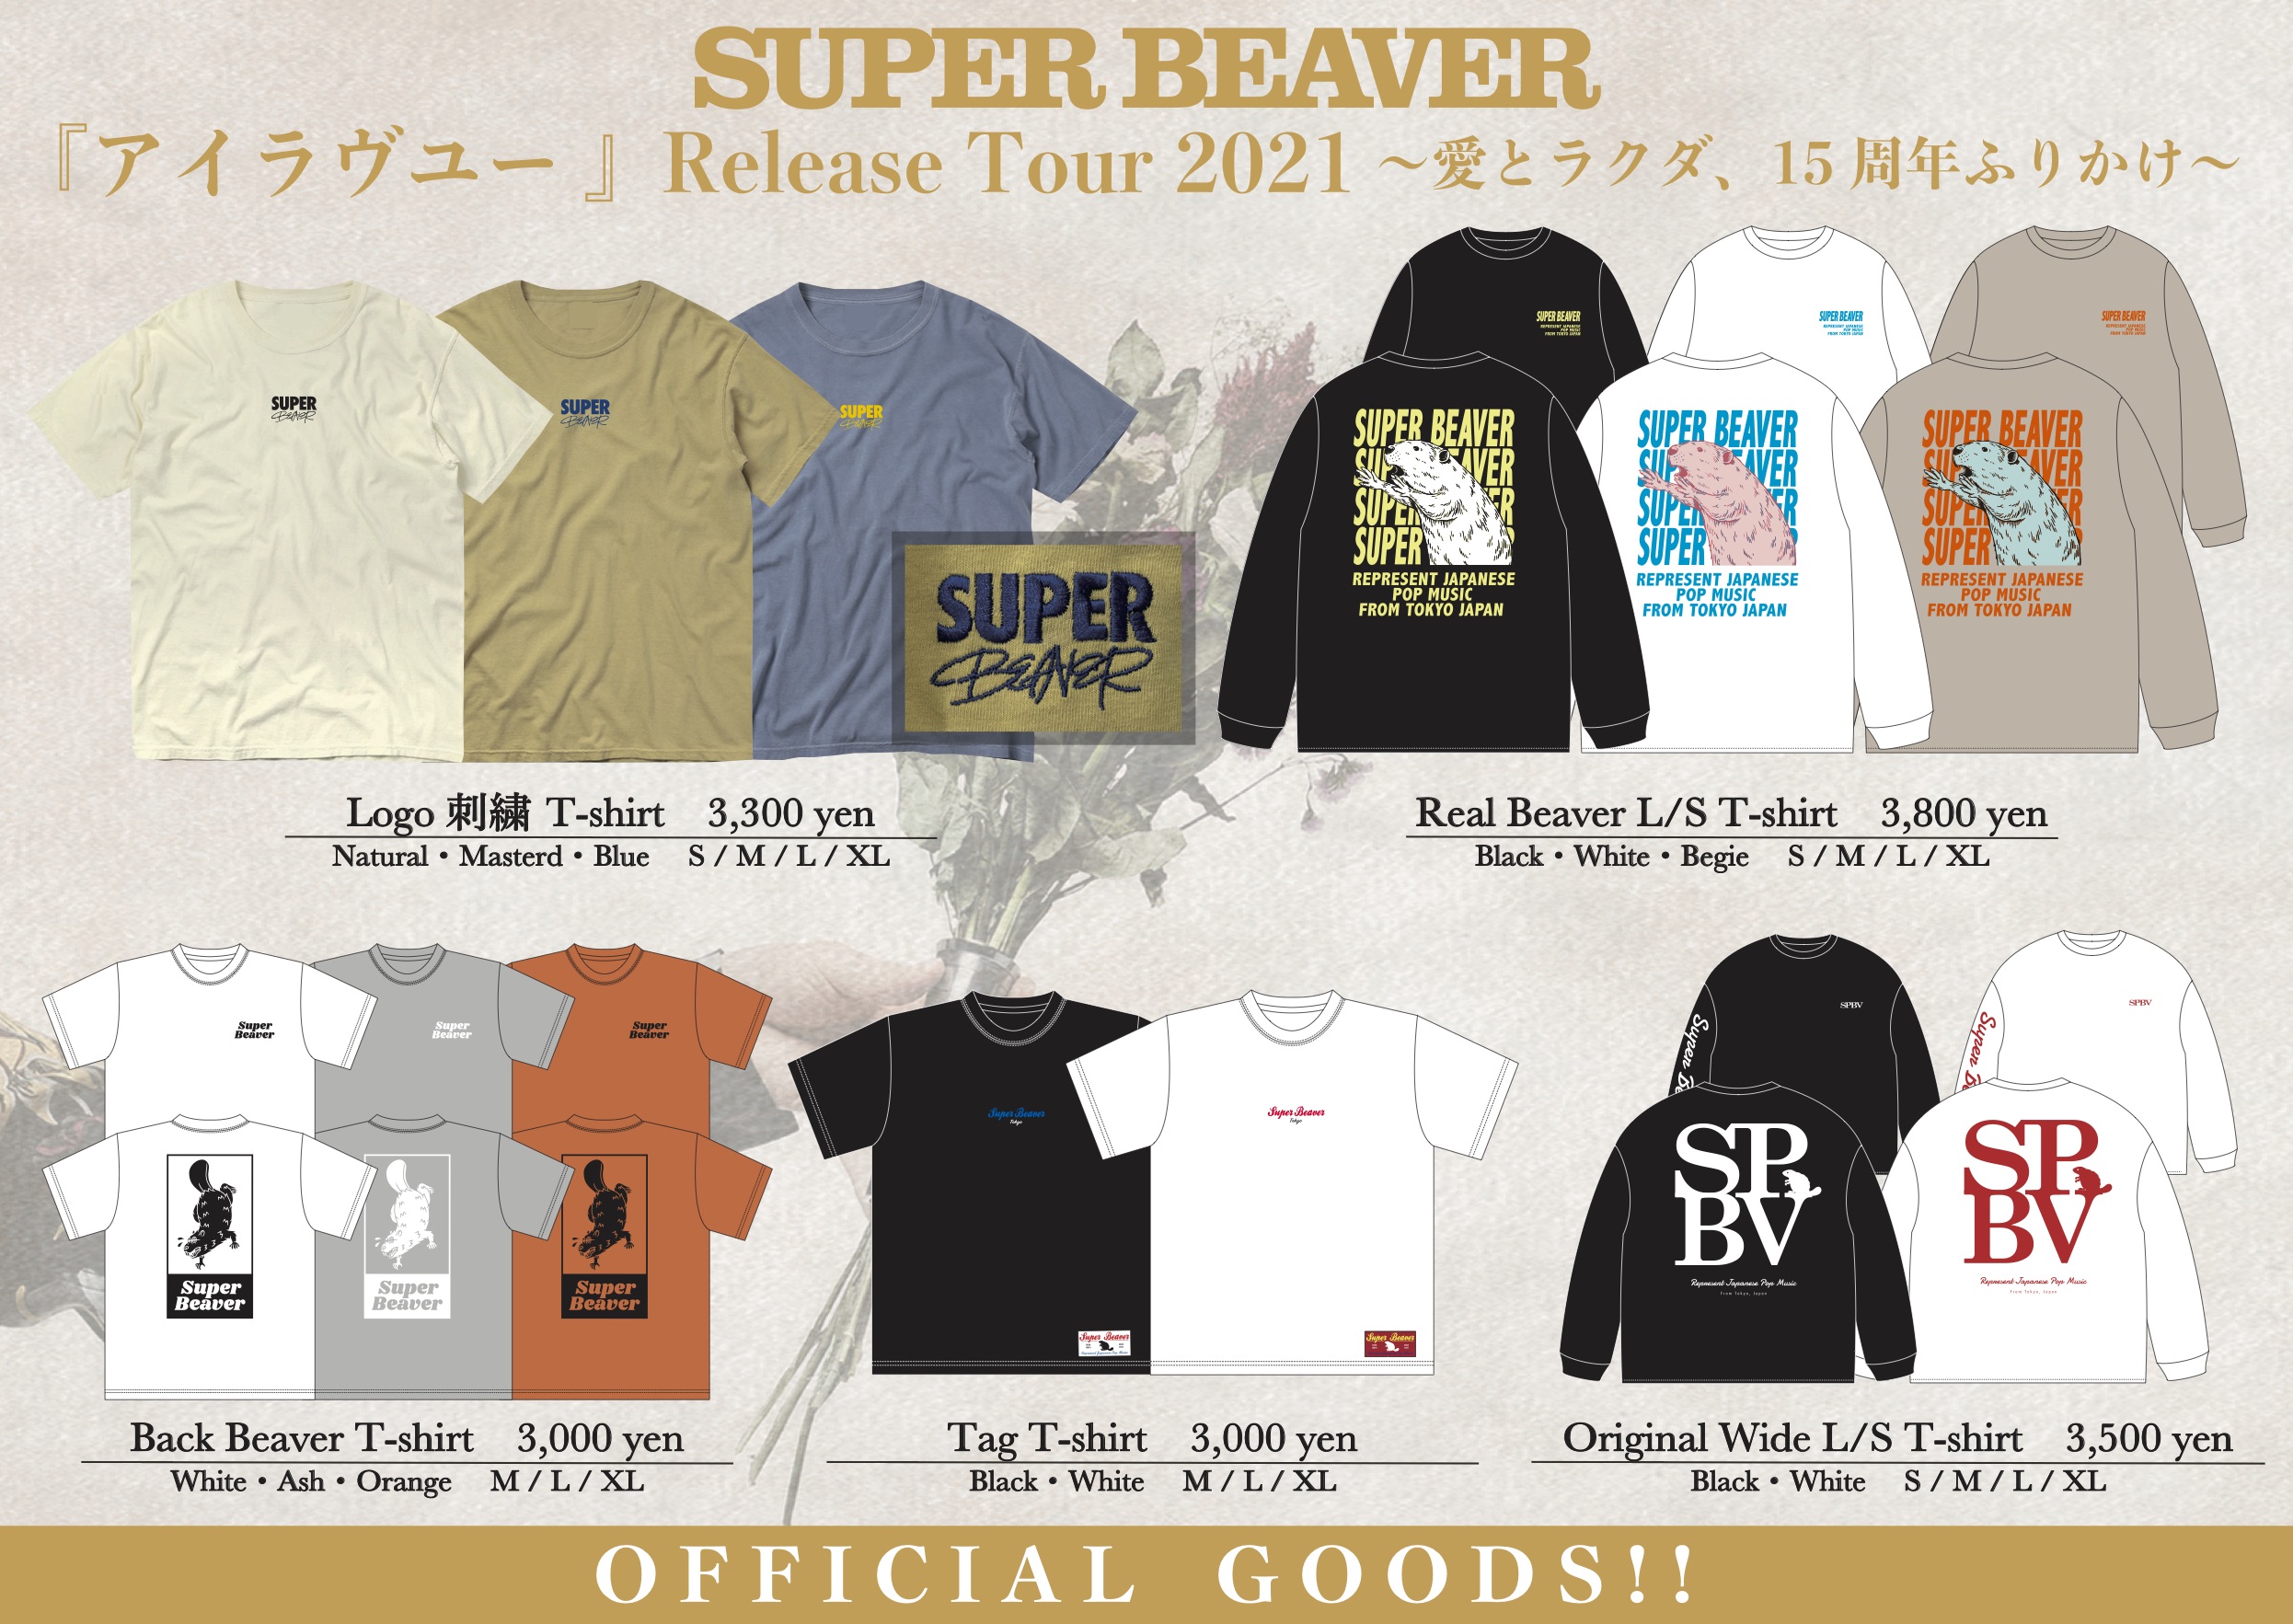 Super Beaver Special Site